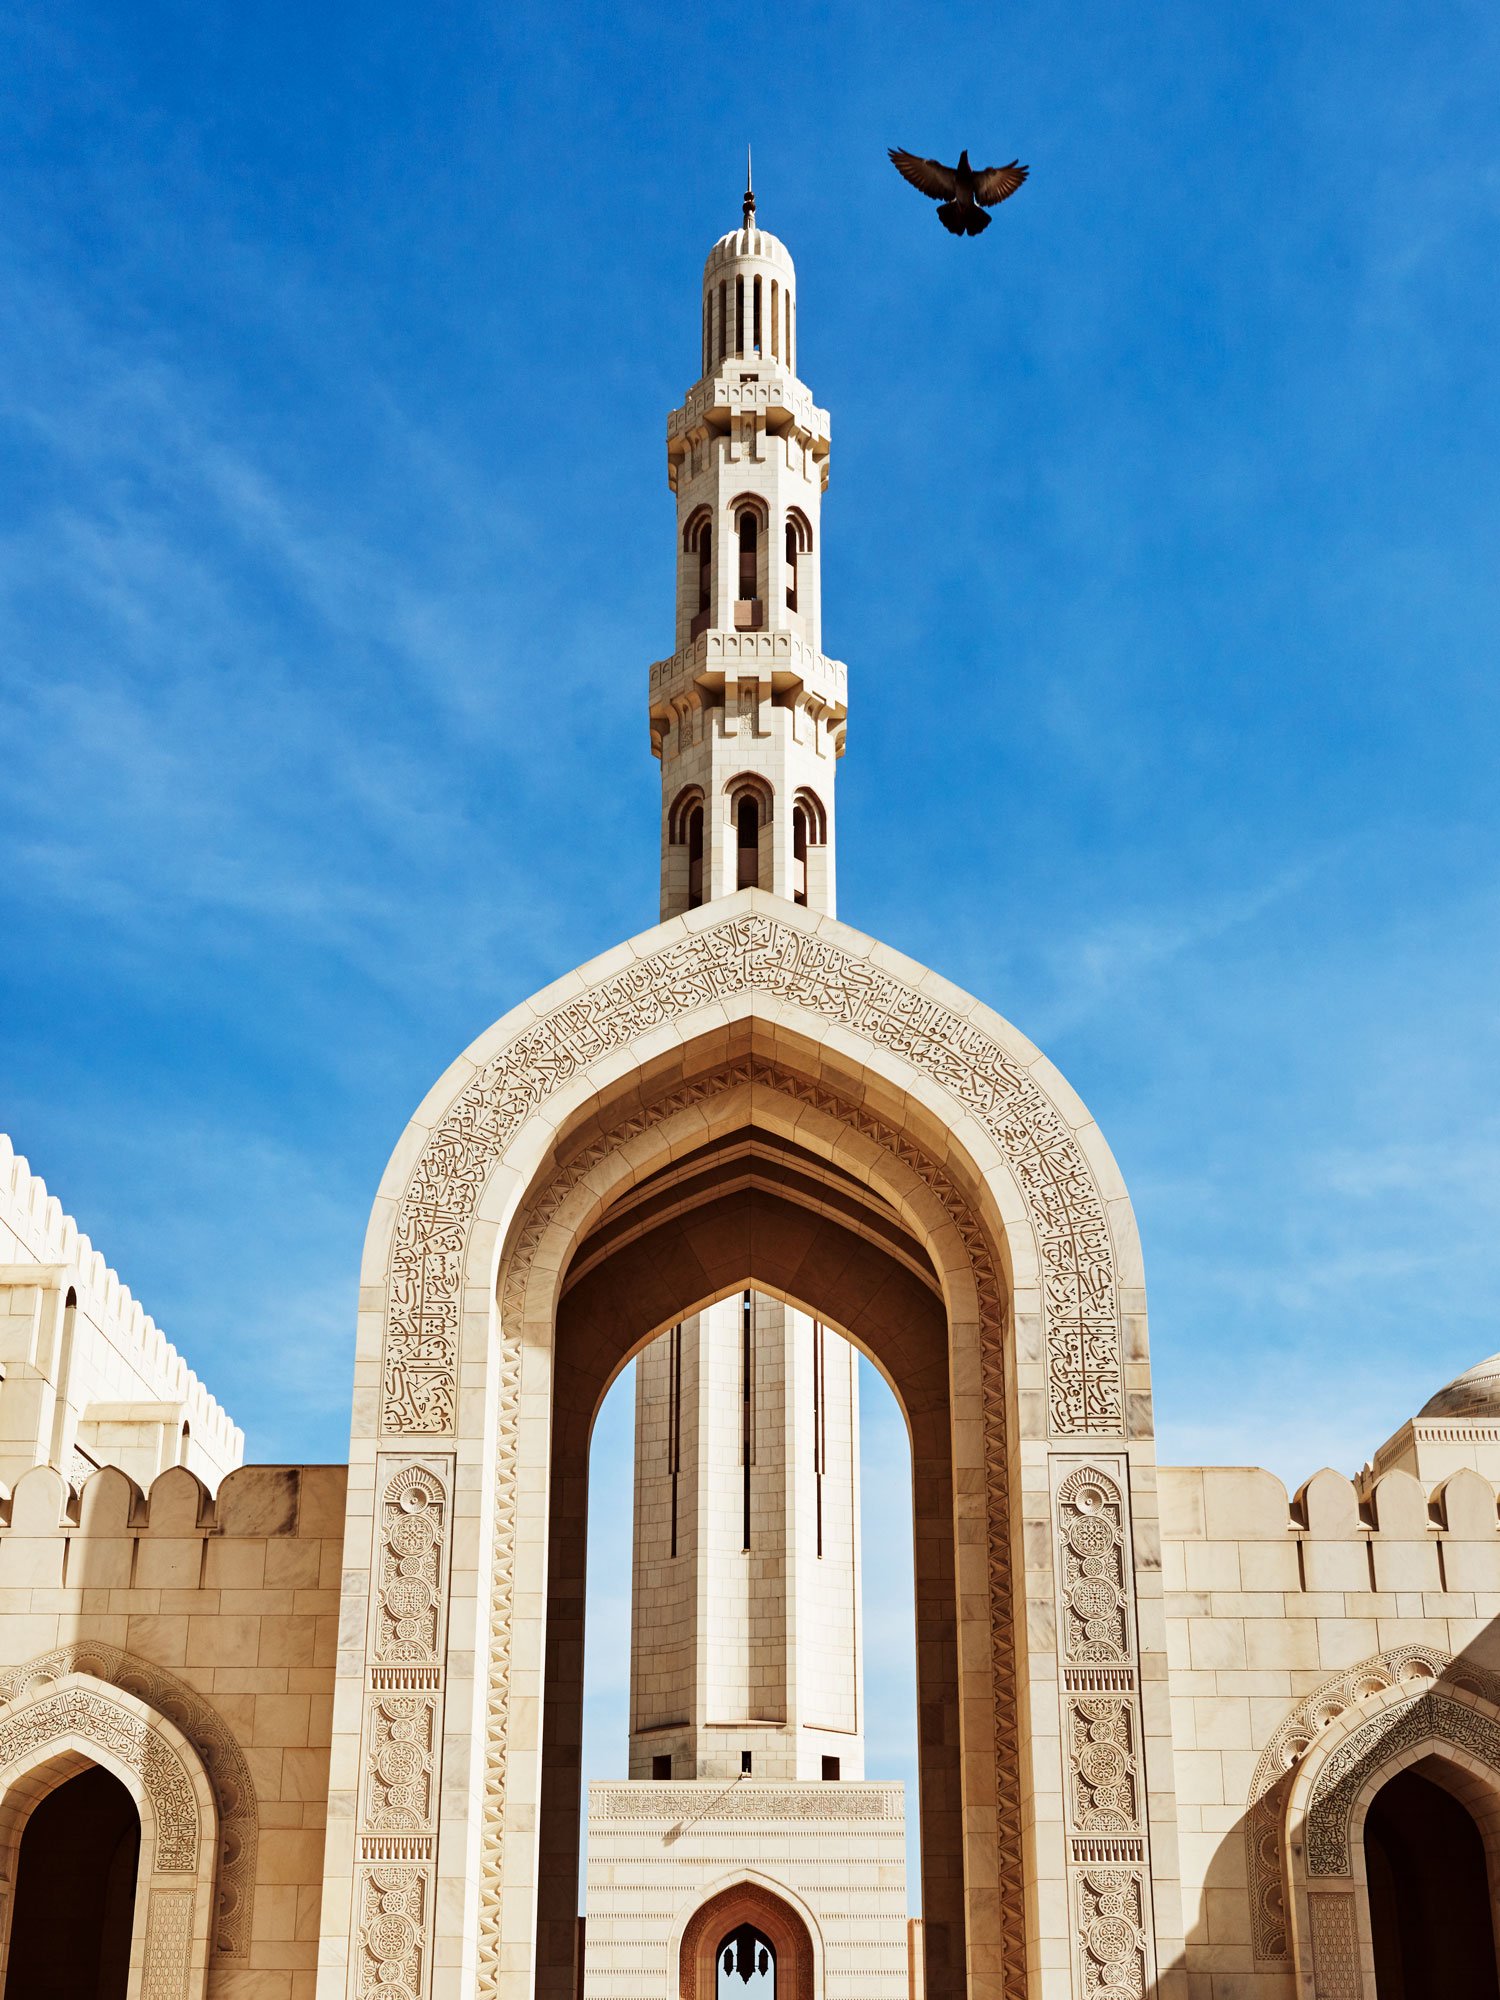 016-03-murrayhall-sultan-qaboos-grand-mosque-0390.jpg